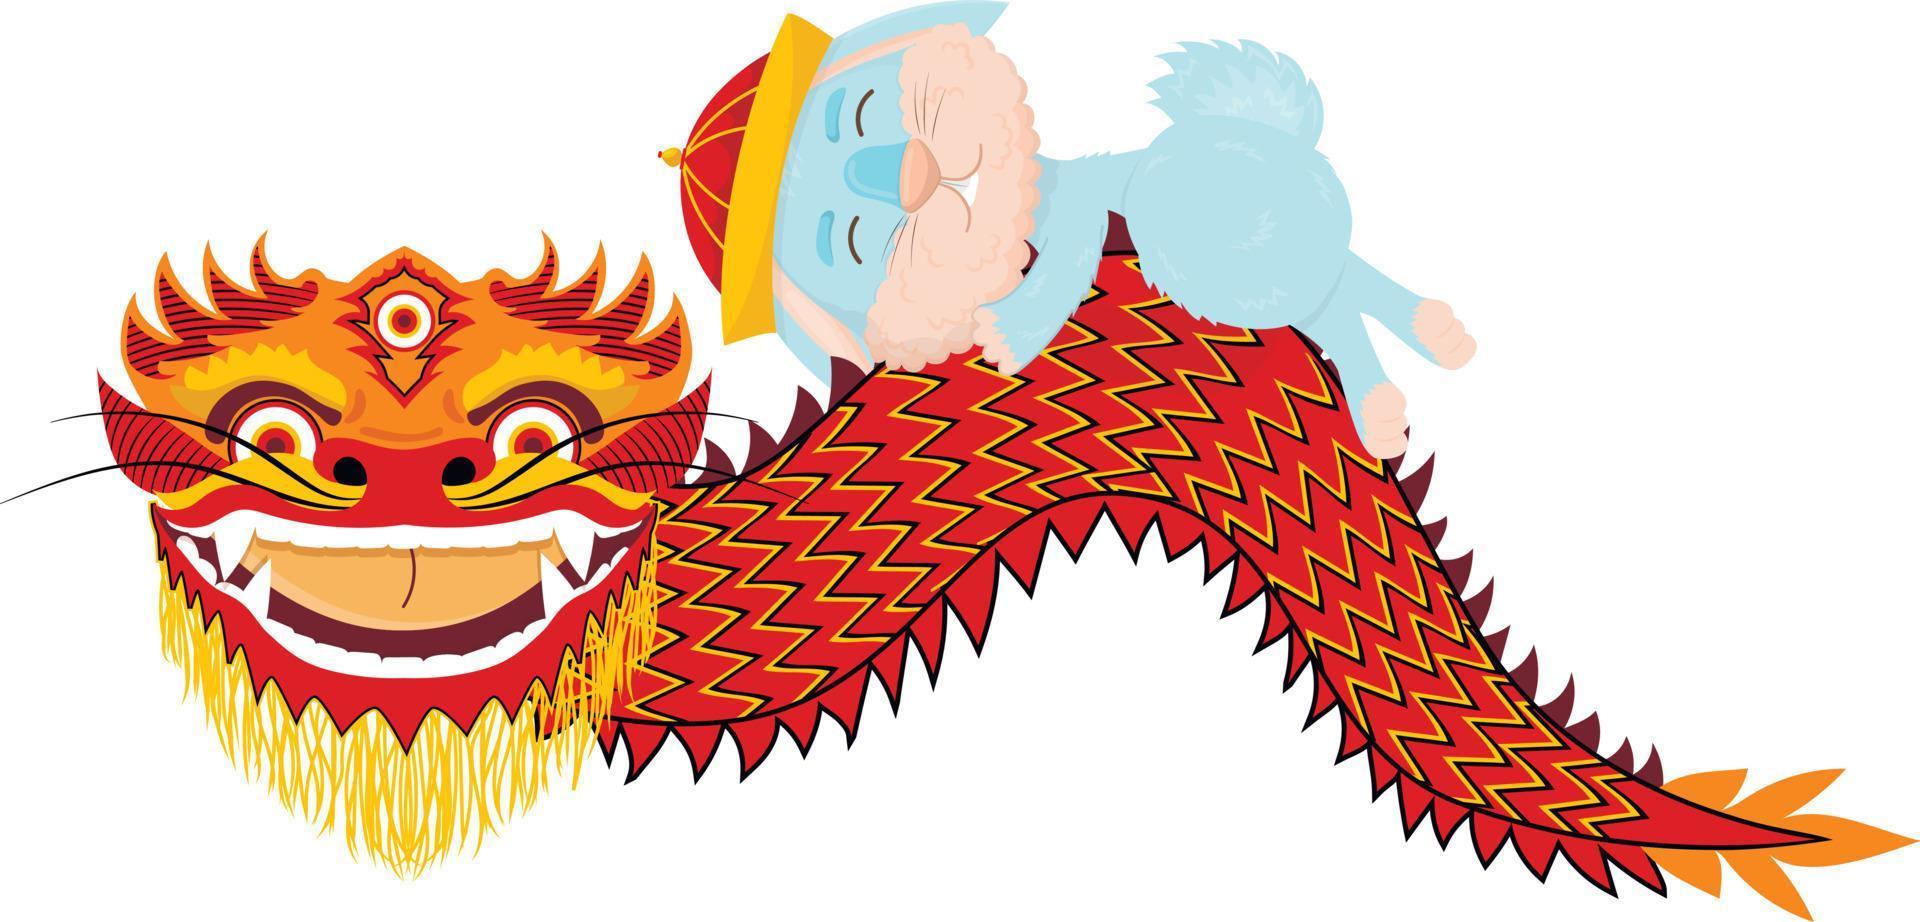 coelho azul bonito dos desenhos animados em um chapéu nacional chinês está dormindo em um dragão vetor